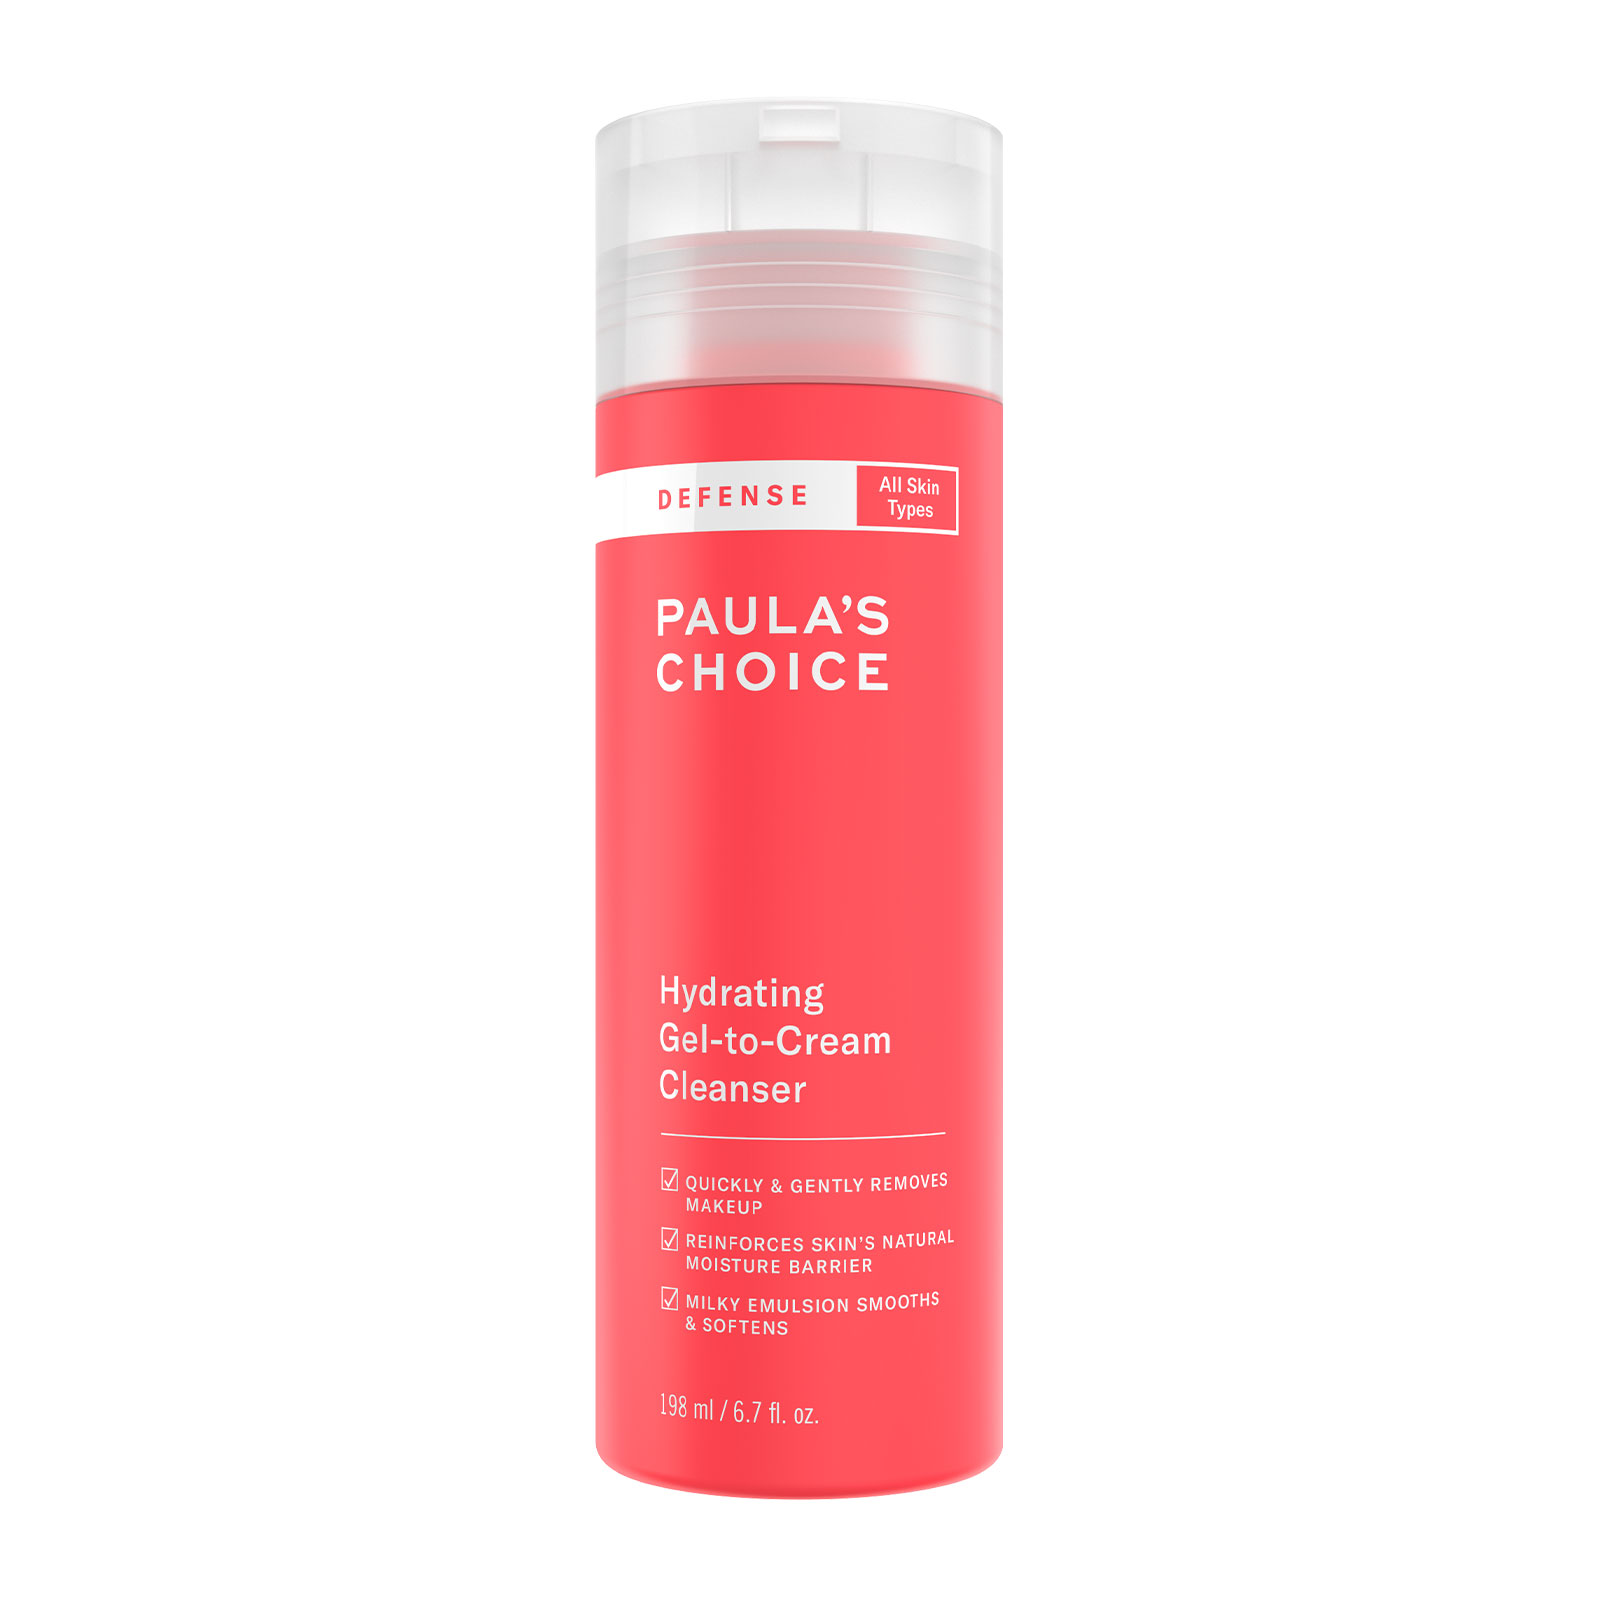 Paula's Choice Defense Gel-To-Cream Cleanser 198Ml